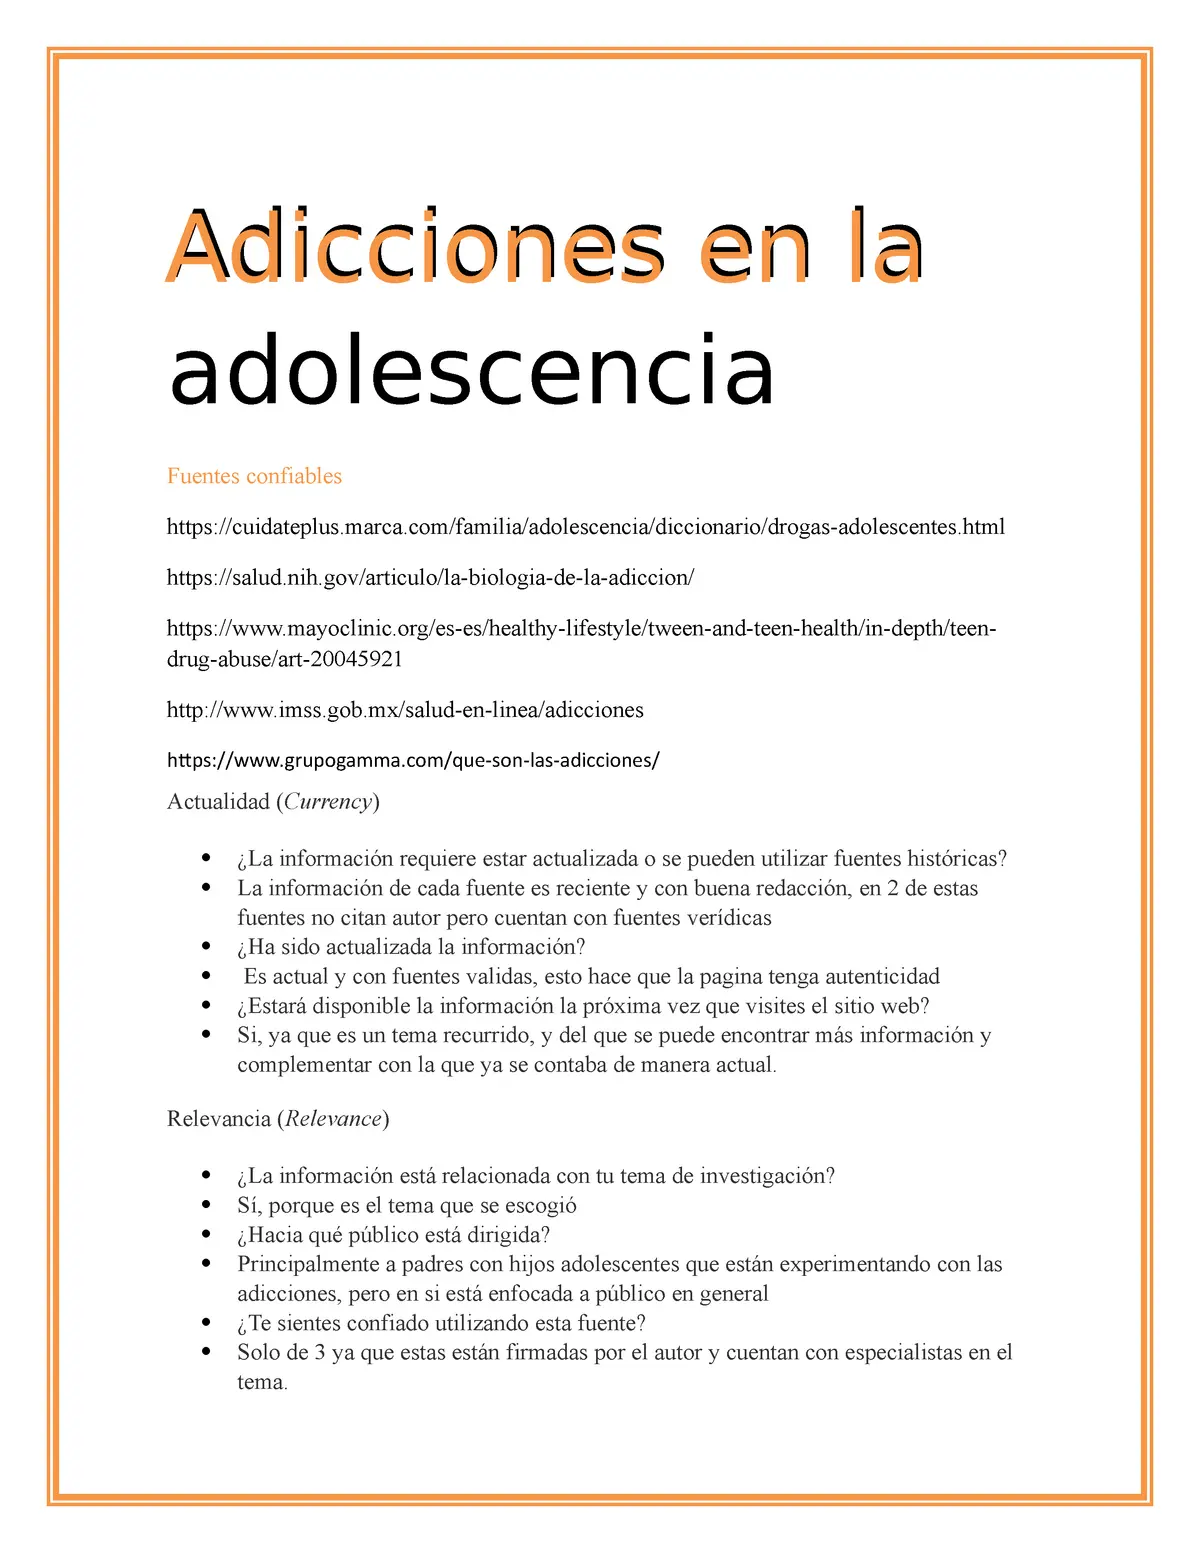 resumen de adicciones en la adolescencia - Cuáles son las 3 principales adicciones presentes en la juventud